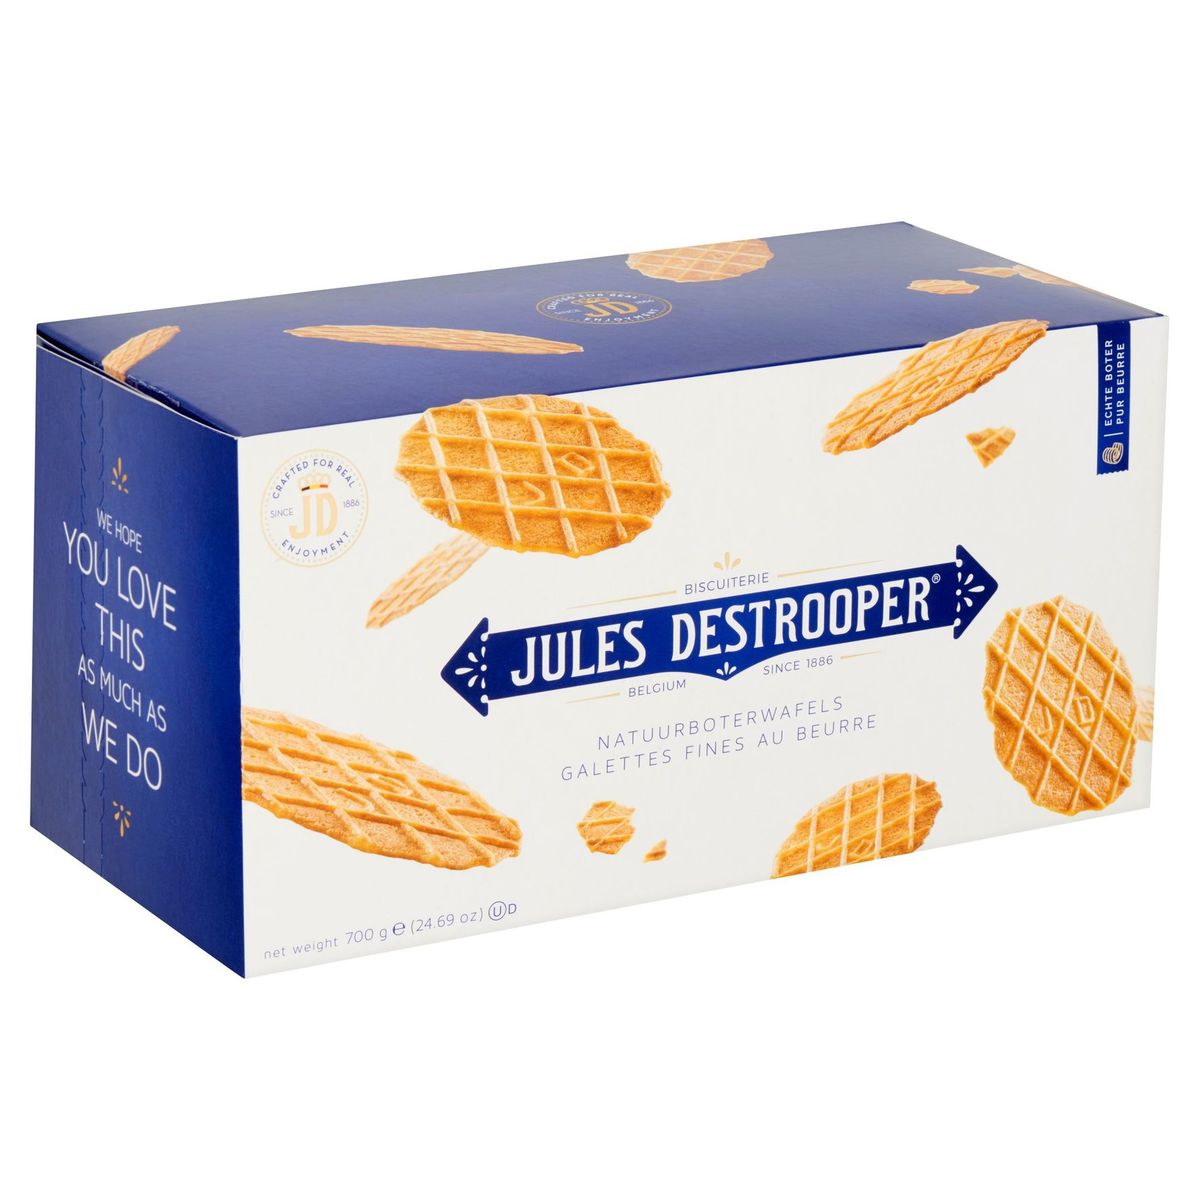 Jules Destrooper Galettes Fines au Beurre 700 g